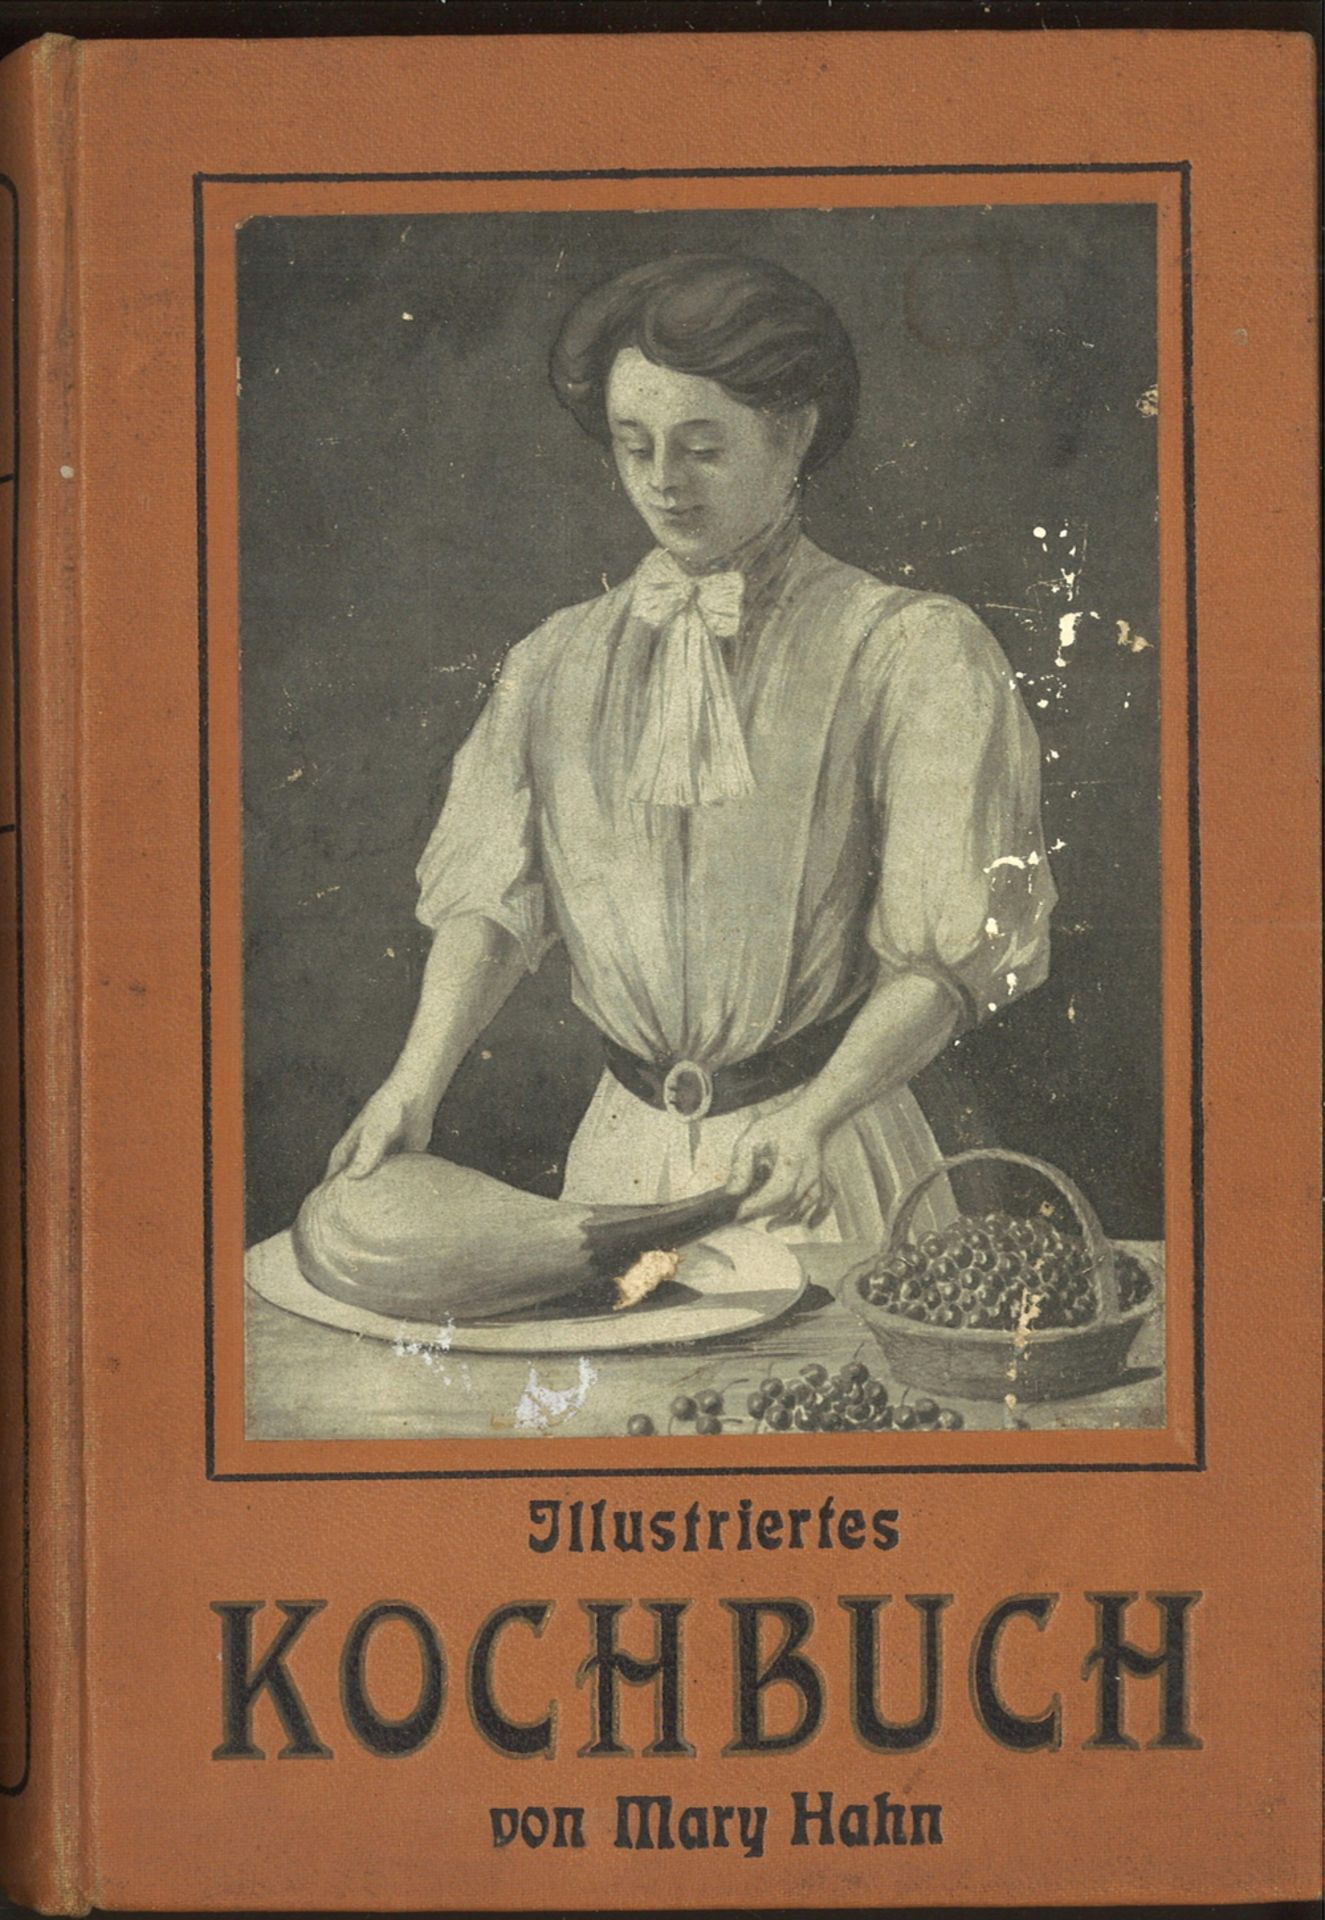 "Illustriertes Kochbuch" für die einfache und feine Küche von Mary Hahn, 2. Auflage